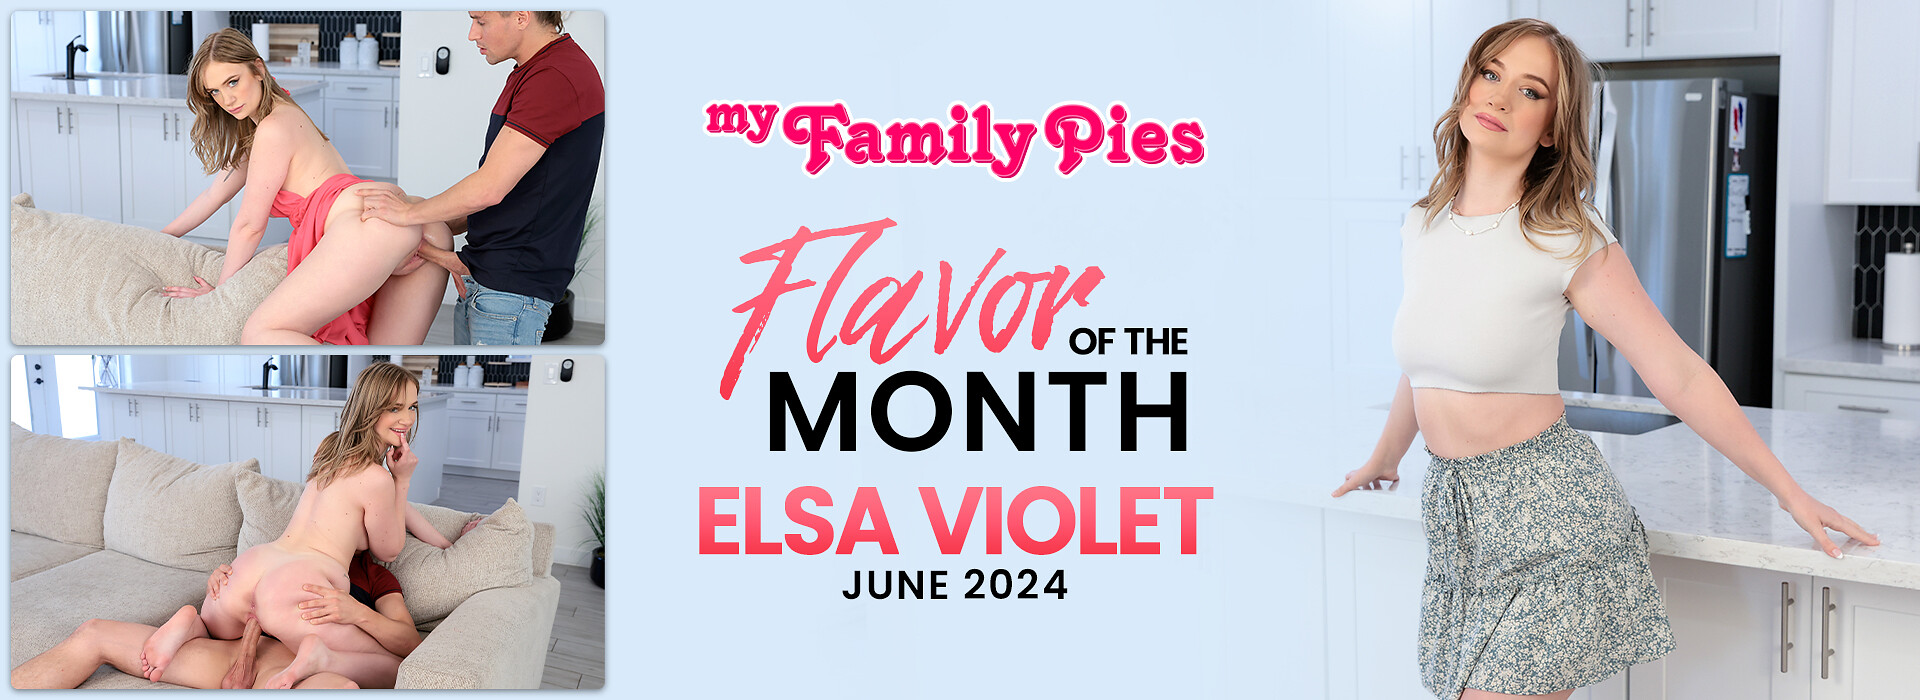 June 2024 Flavor Of The Month Elsa Violet